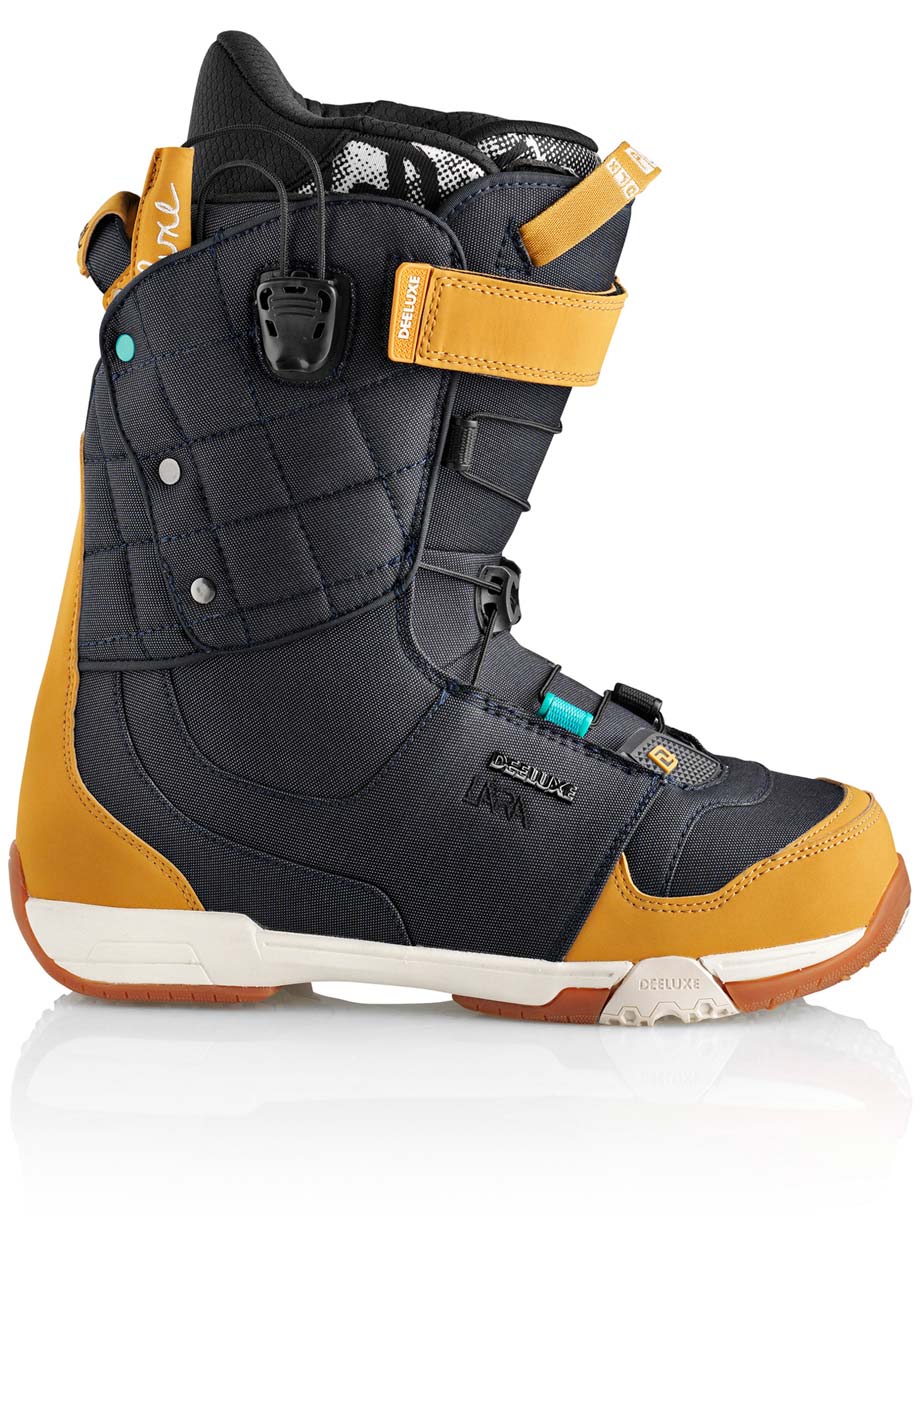 Ботинки сноубордические Deeluxe Ray Lara  размер 25,0 denim (темный джинс + беж кож.зам) 2013 год